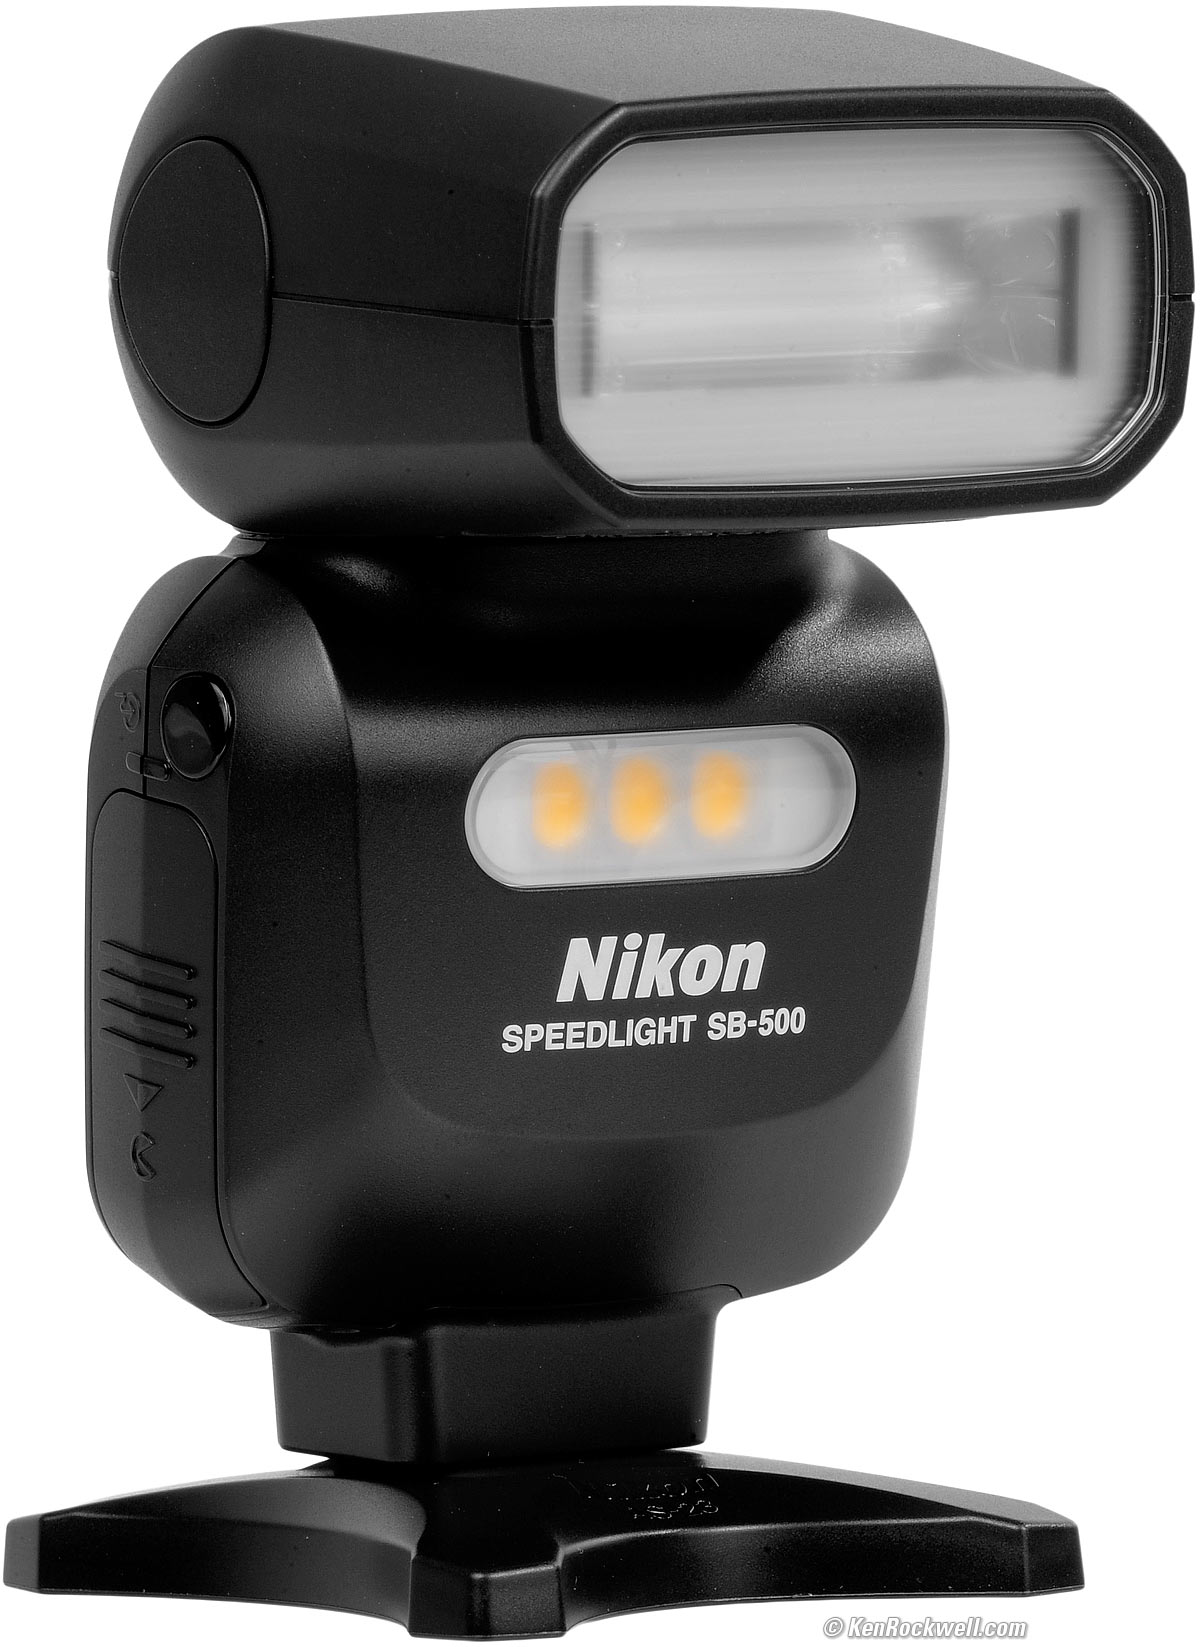 Nikon SB-500 Flash Review by Ken Rockwell